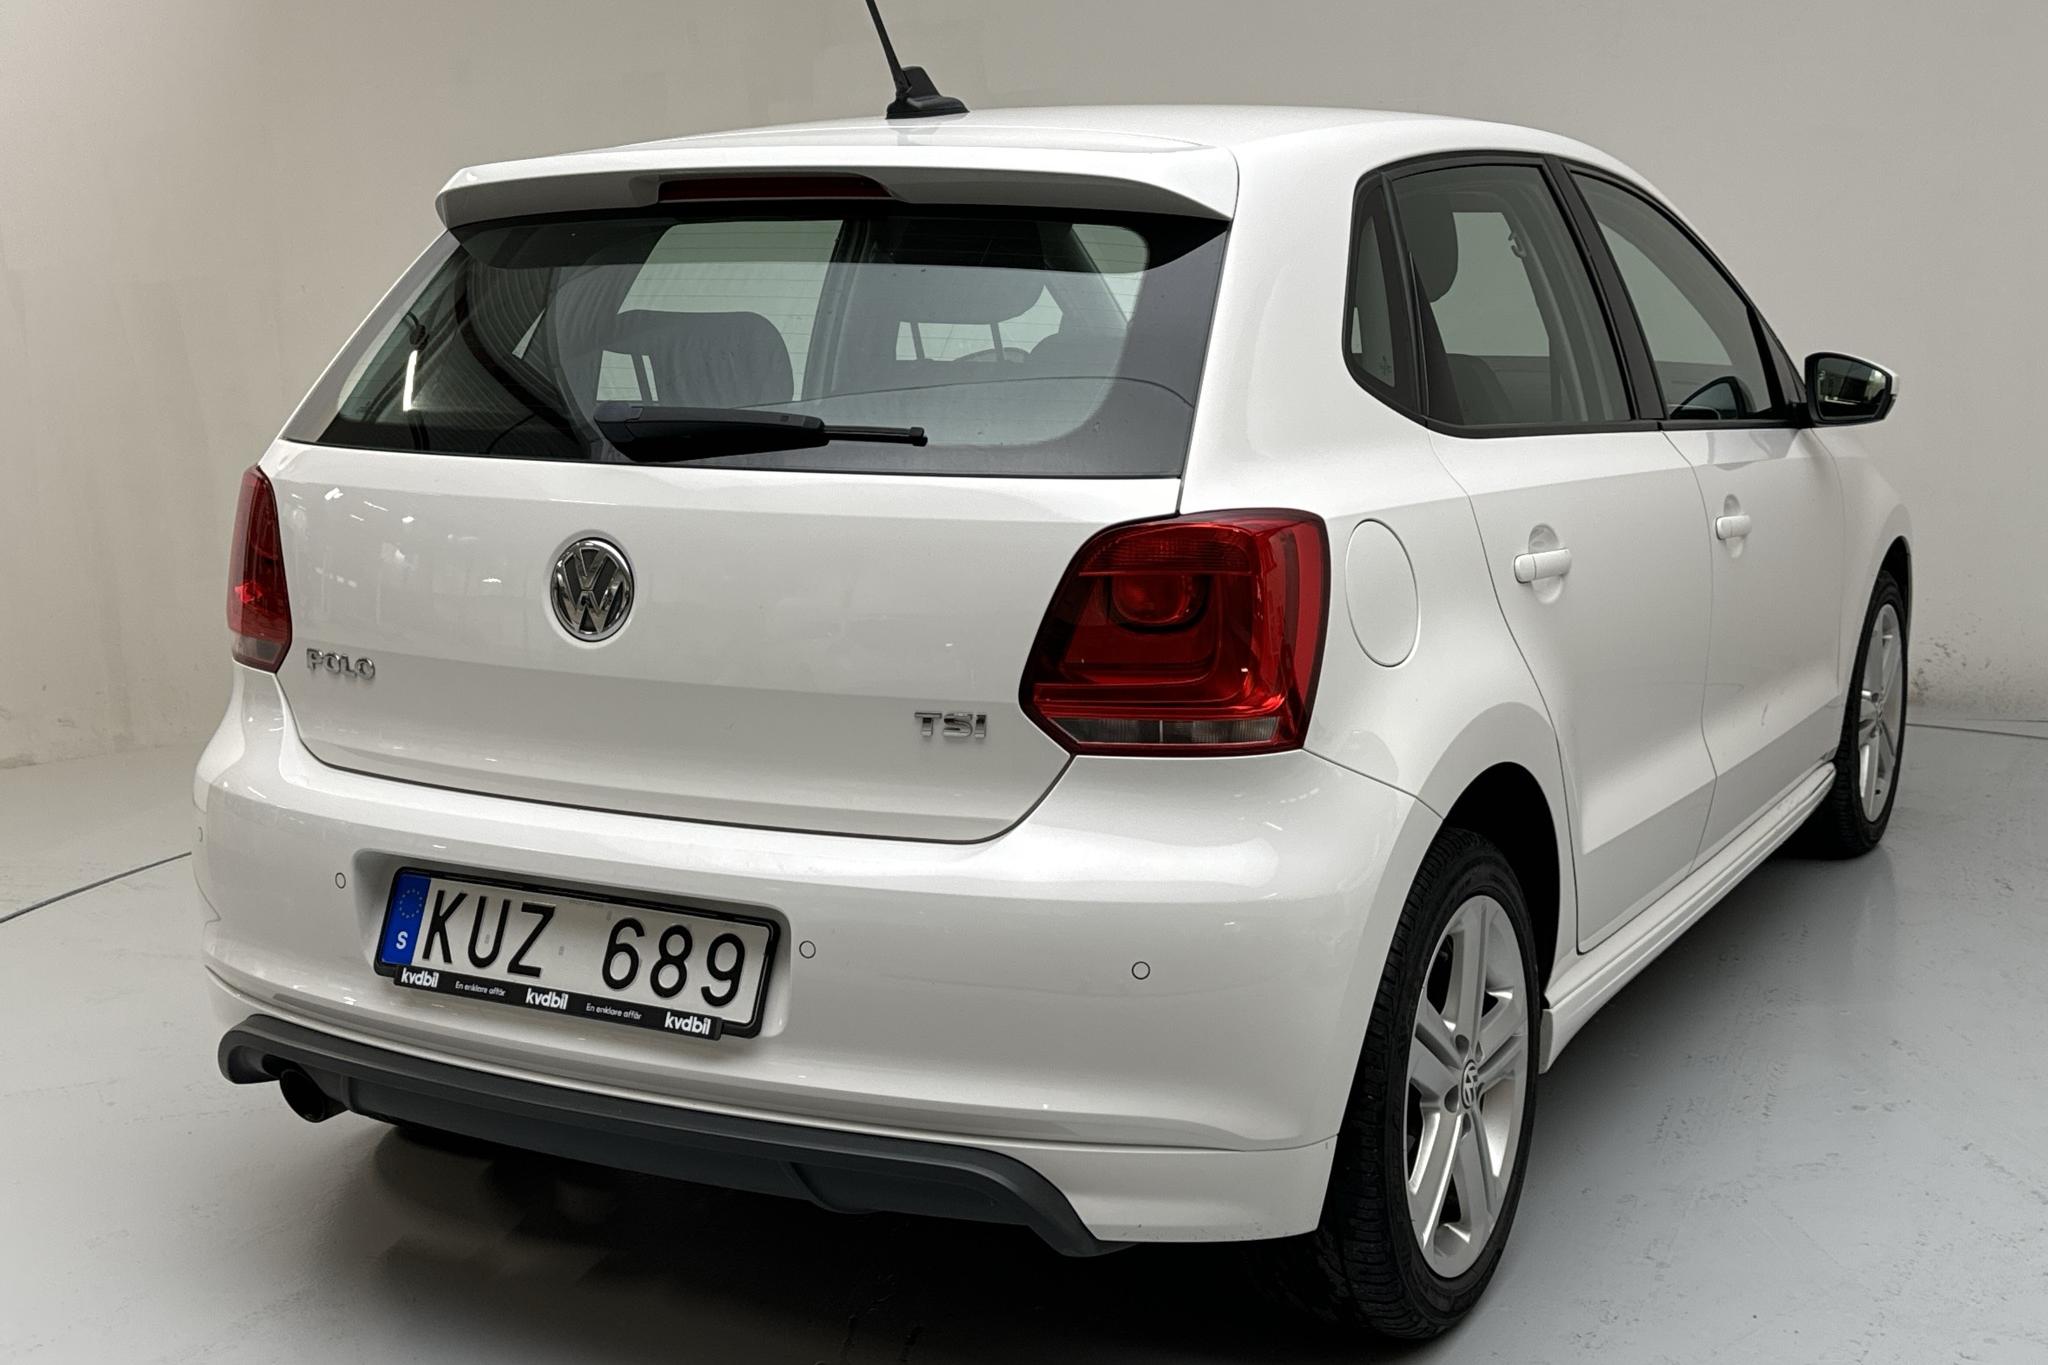 VW Polo 1.2 TSI 5dr (90hk) - 170 030 km - Manual - white - 2013